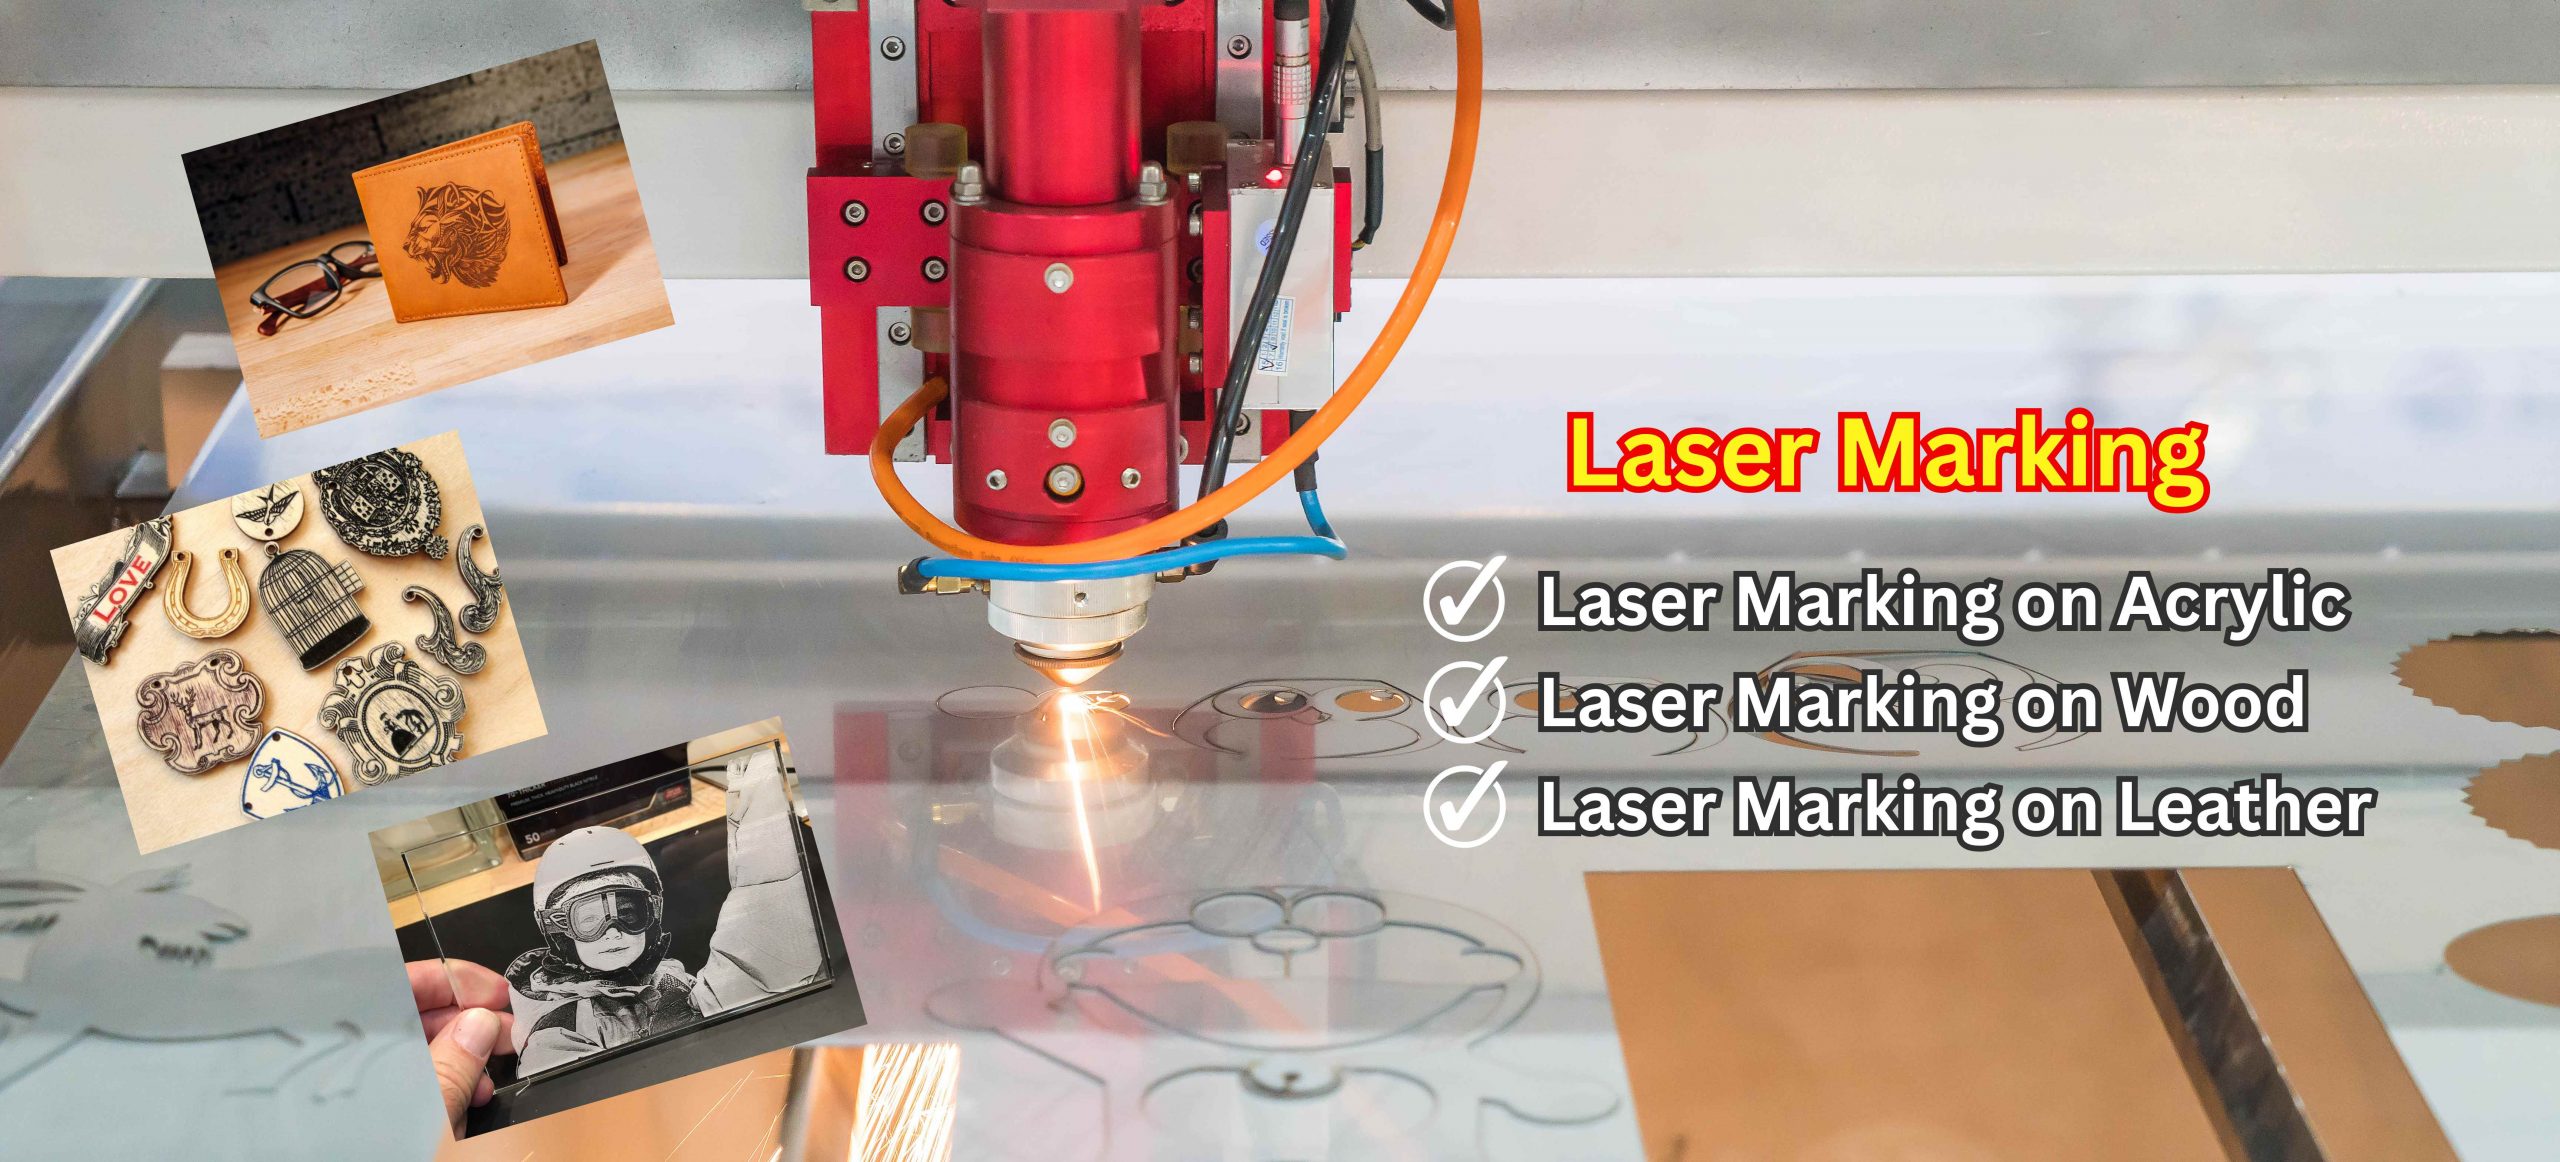 Laser Marking Services in chennai